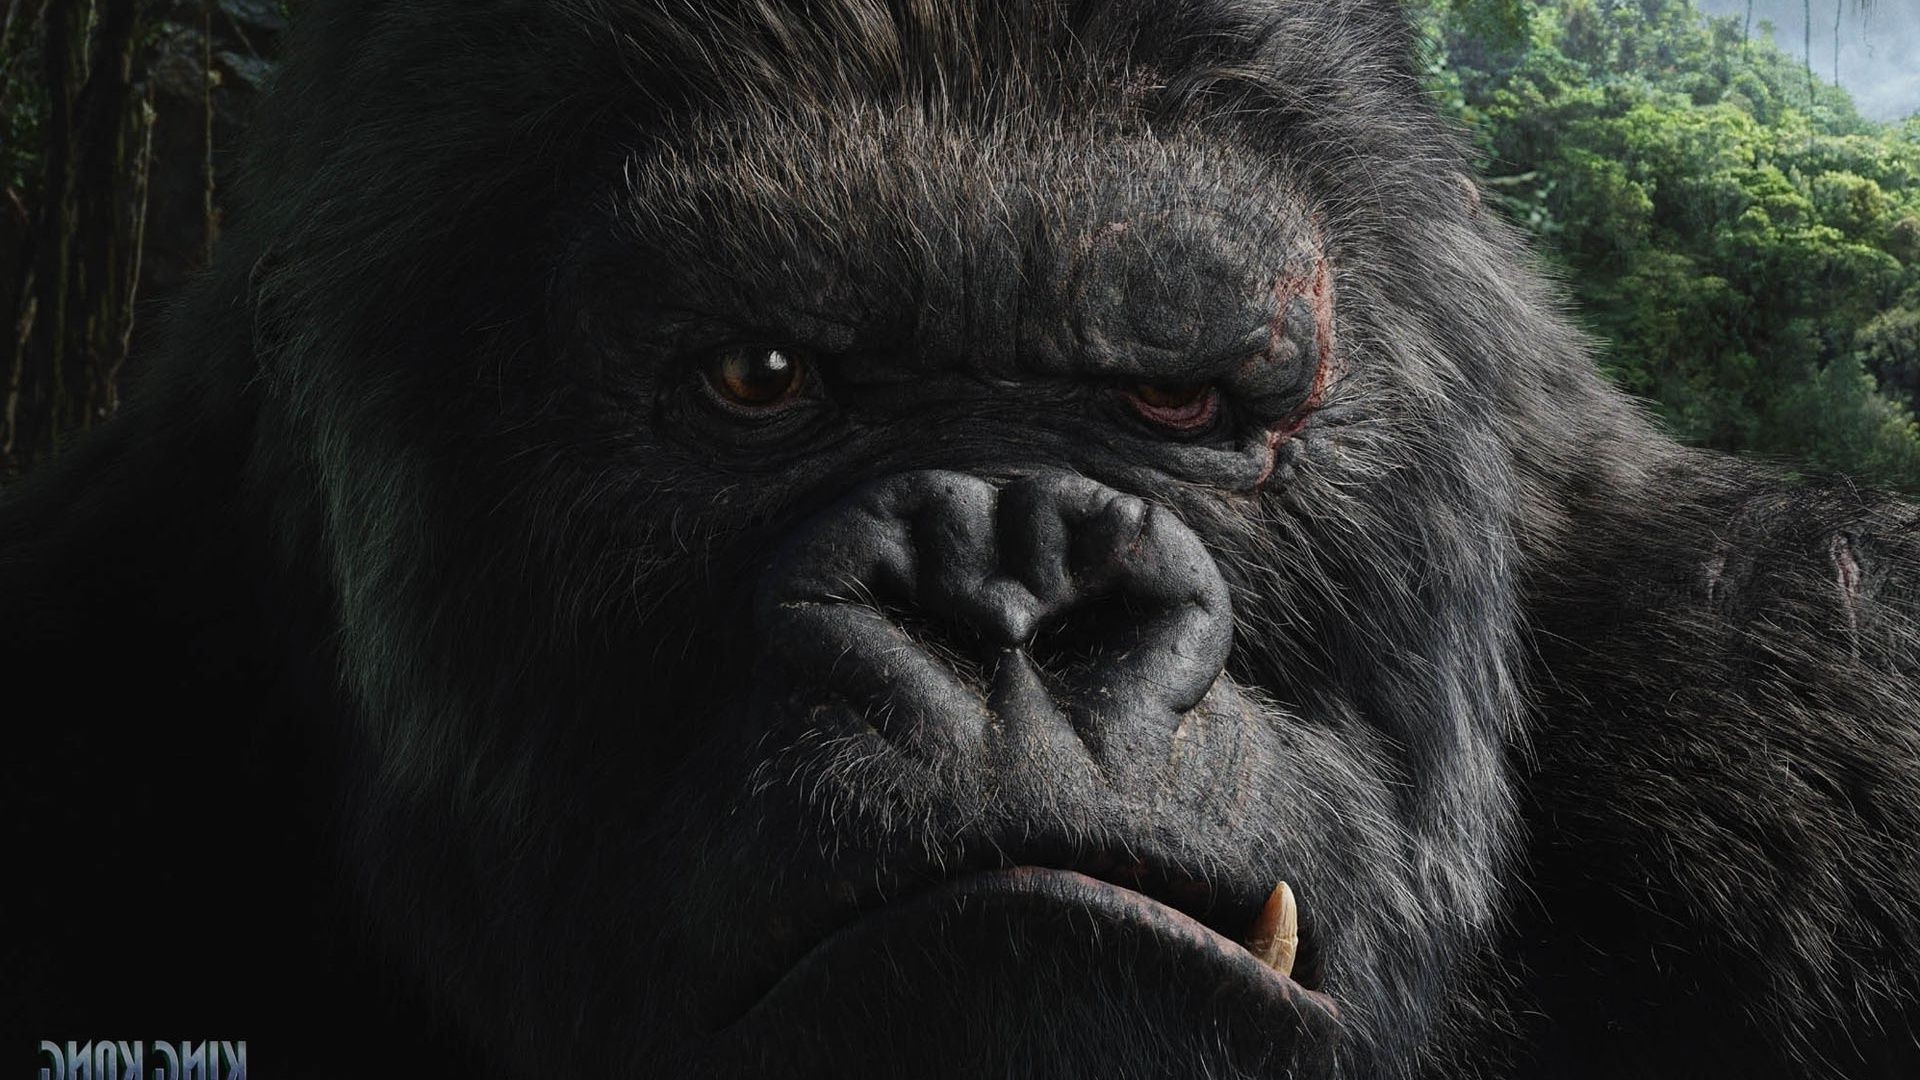 фантастика дикой природы млекопитающее кривляться зоопарк портрет предстоятель горилла животное обезьяна природа мех